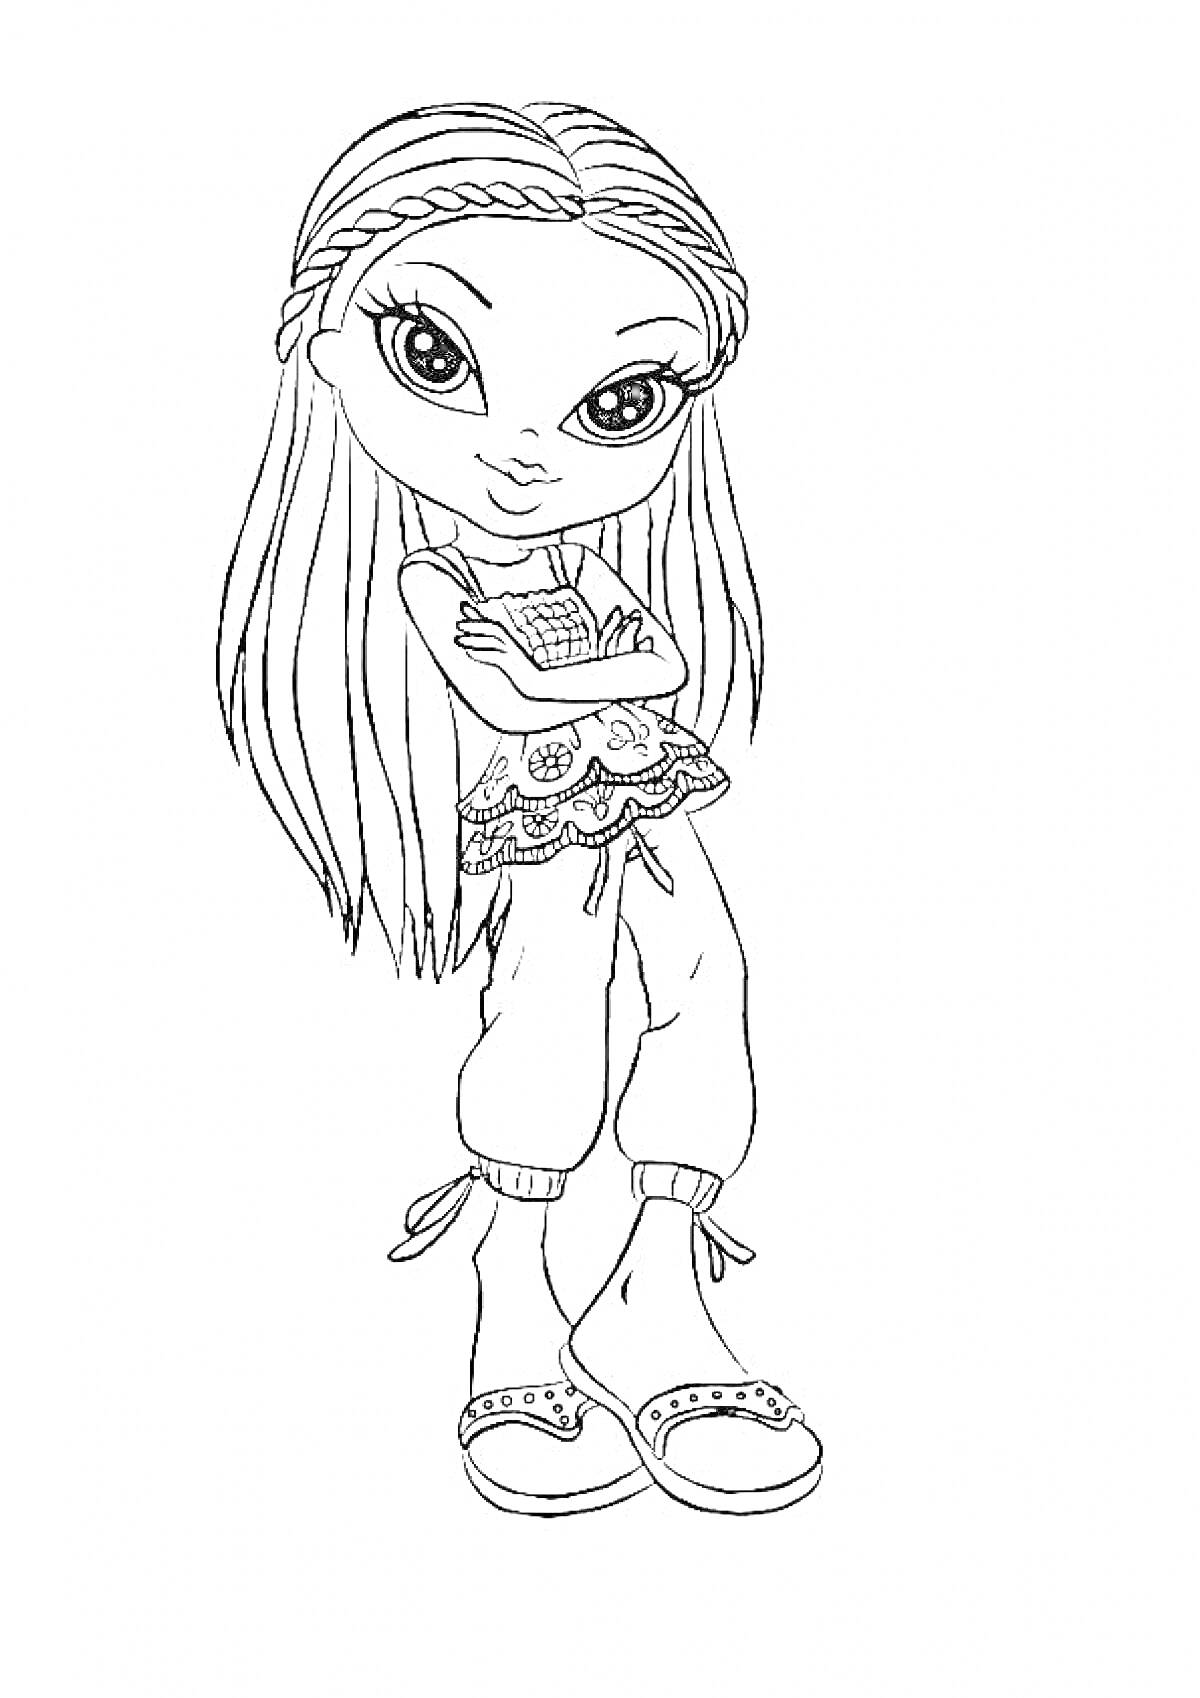 Раскраска Девочка Братц с длинными волосами, одетая в топ и брюки, с перекрещенными руками